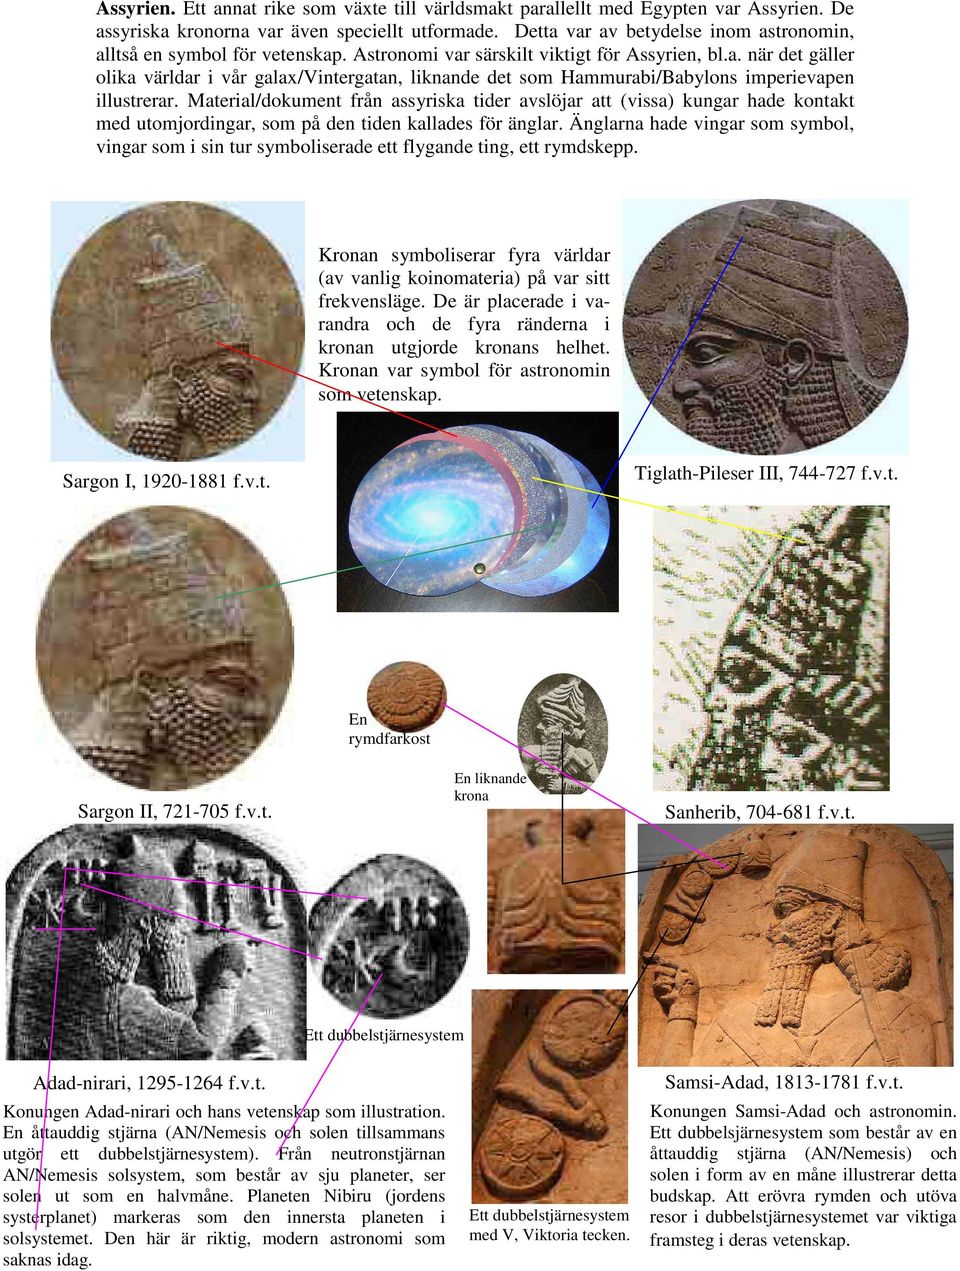 Material/dokument från assyriska tider avslöjar att (vissa) kungar hade kontakt med utomjordingar, som på den tiden kallades för änglar.